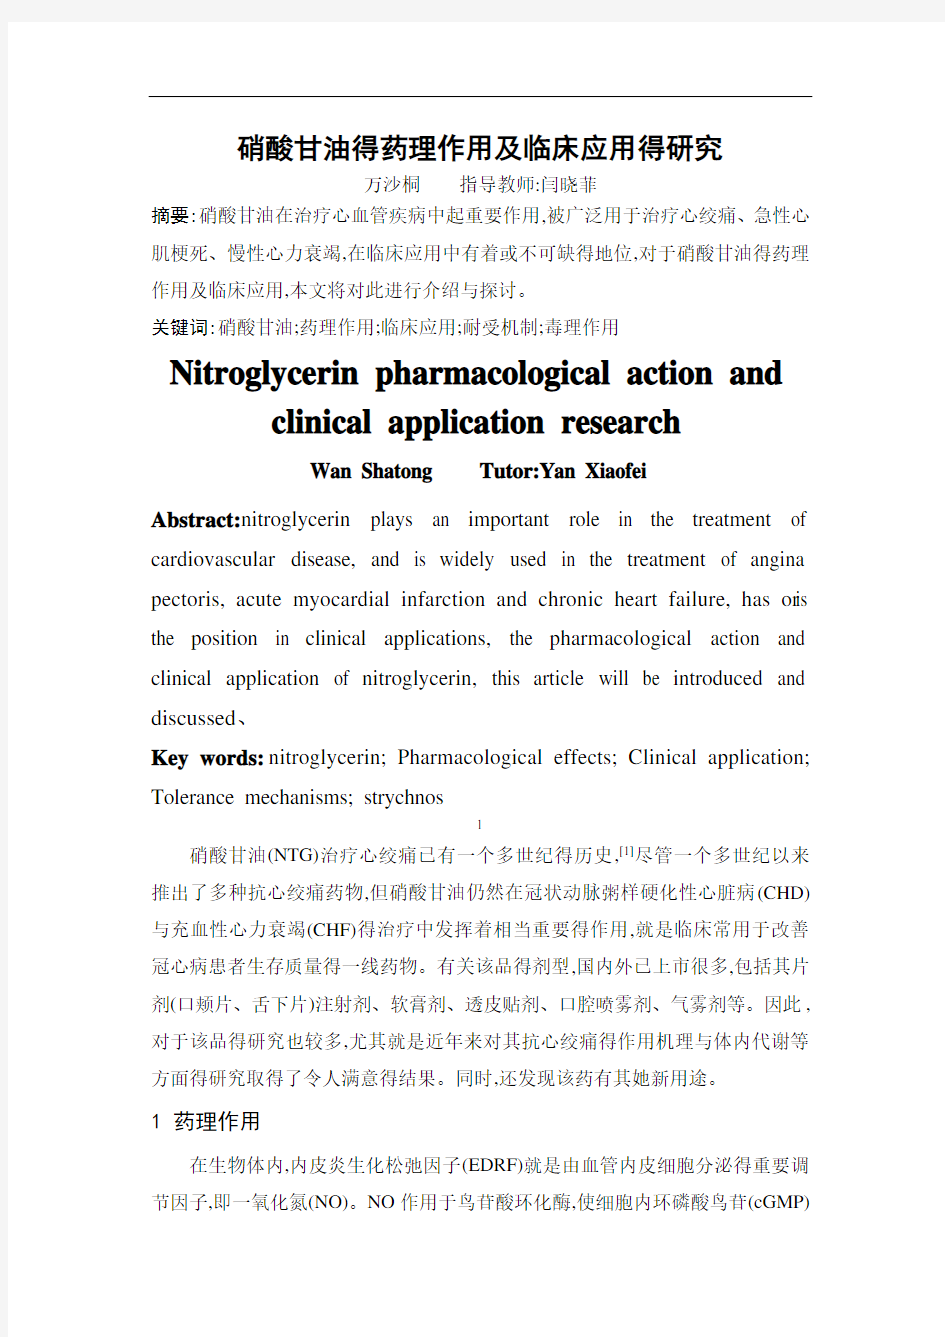 硝酸甘油的药理作用及临床应用的研究